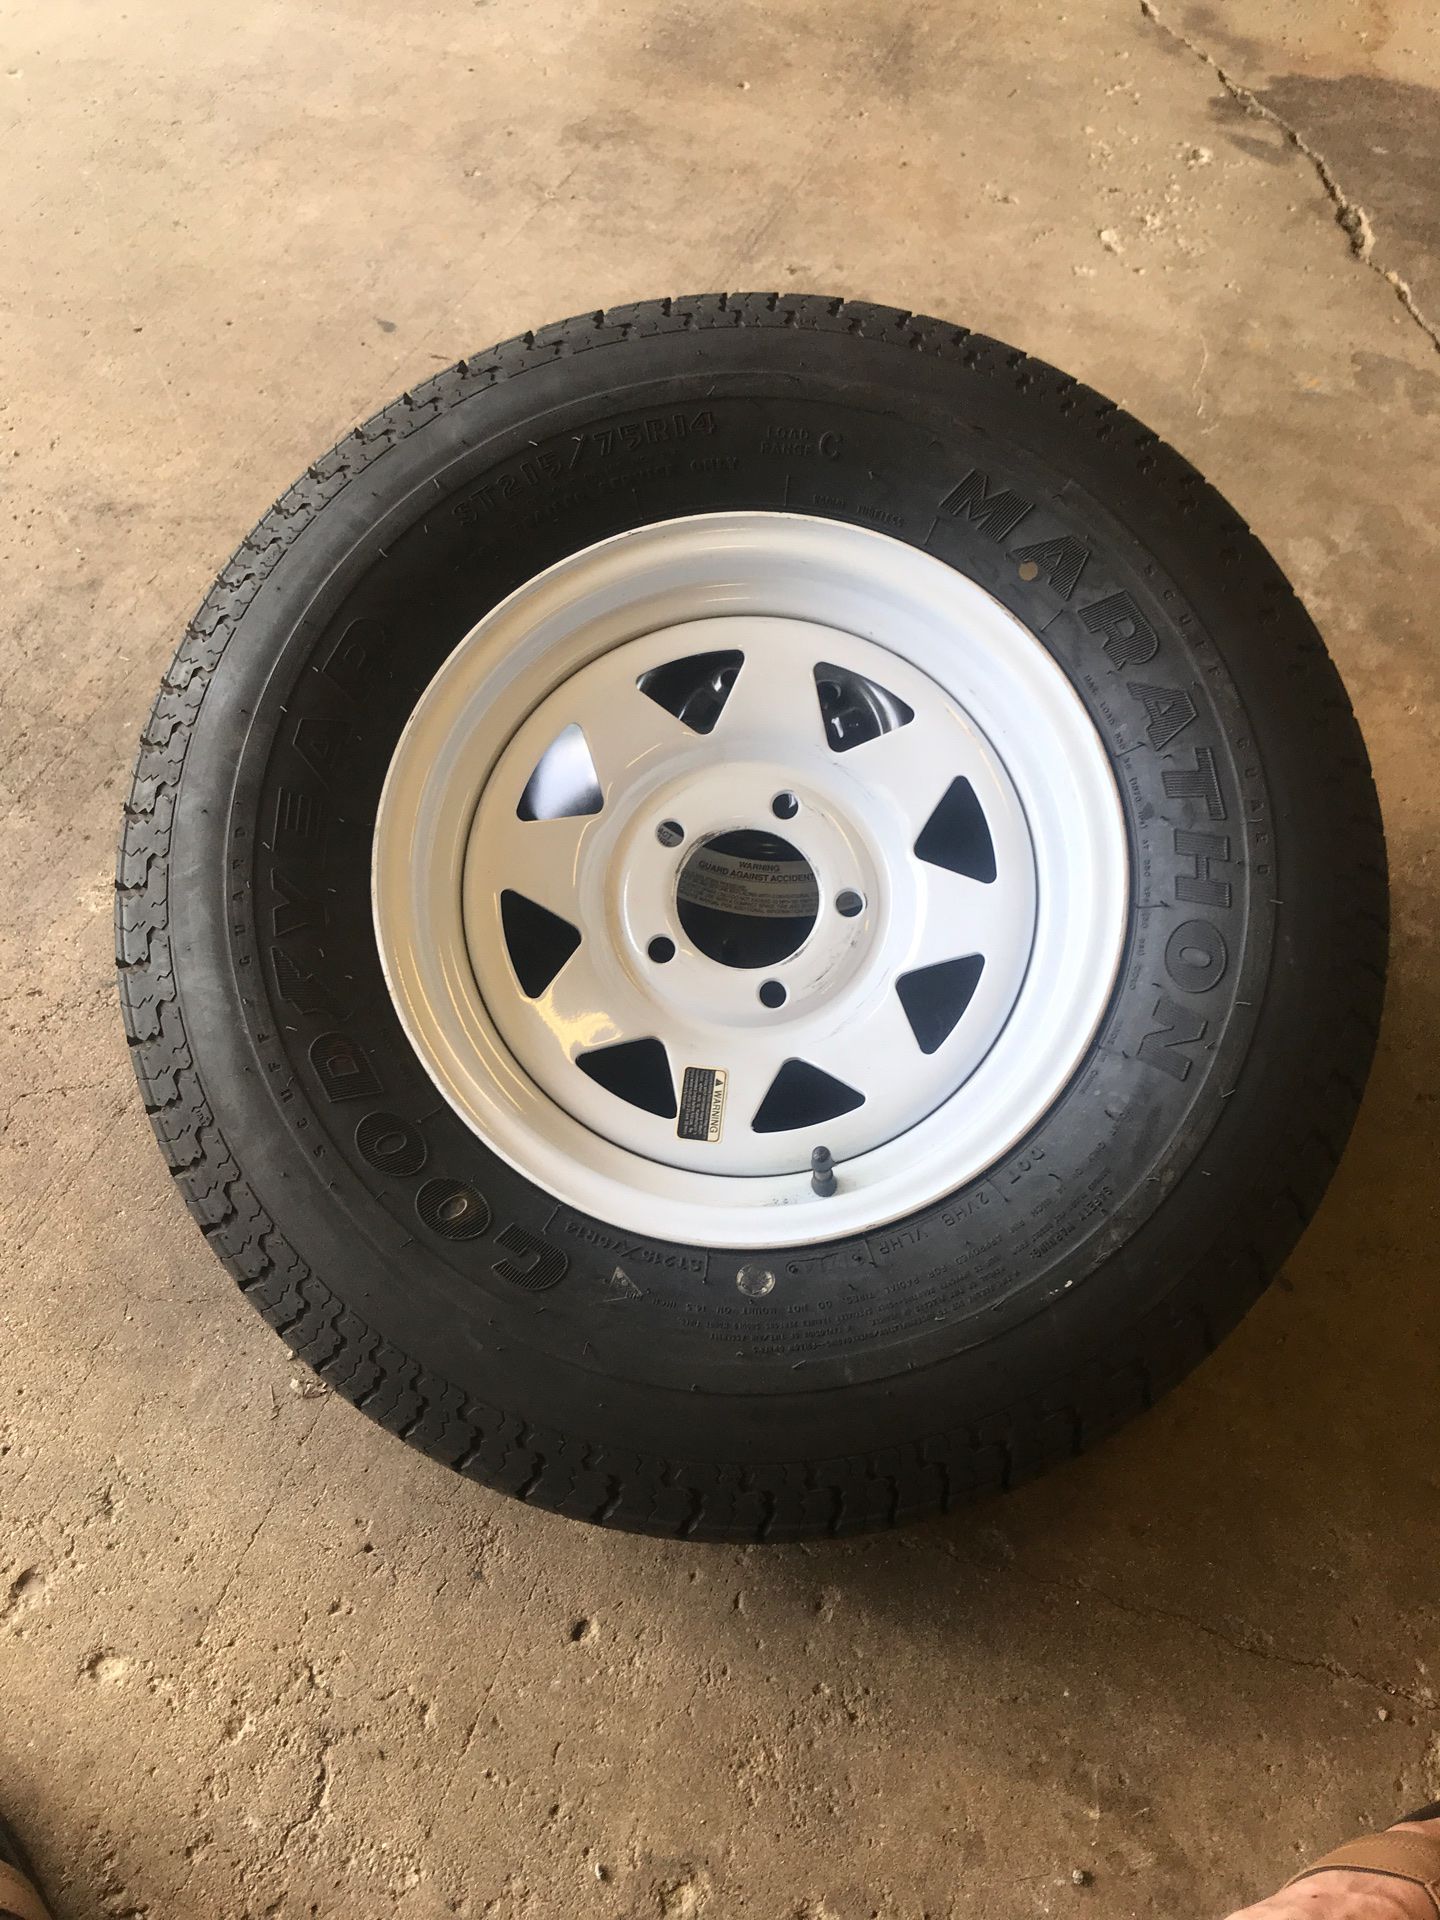 NEW spare trailer wheel/tire